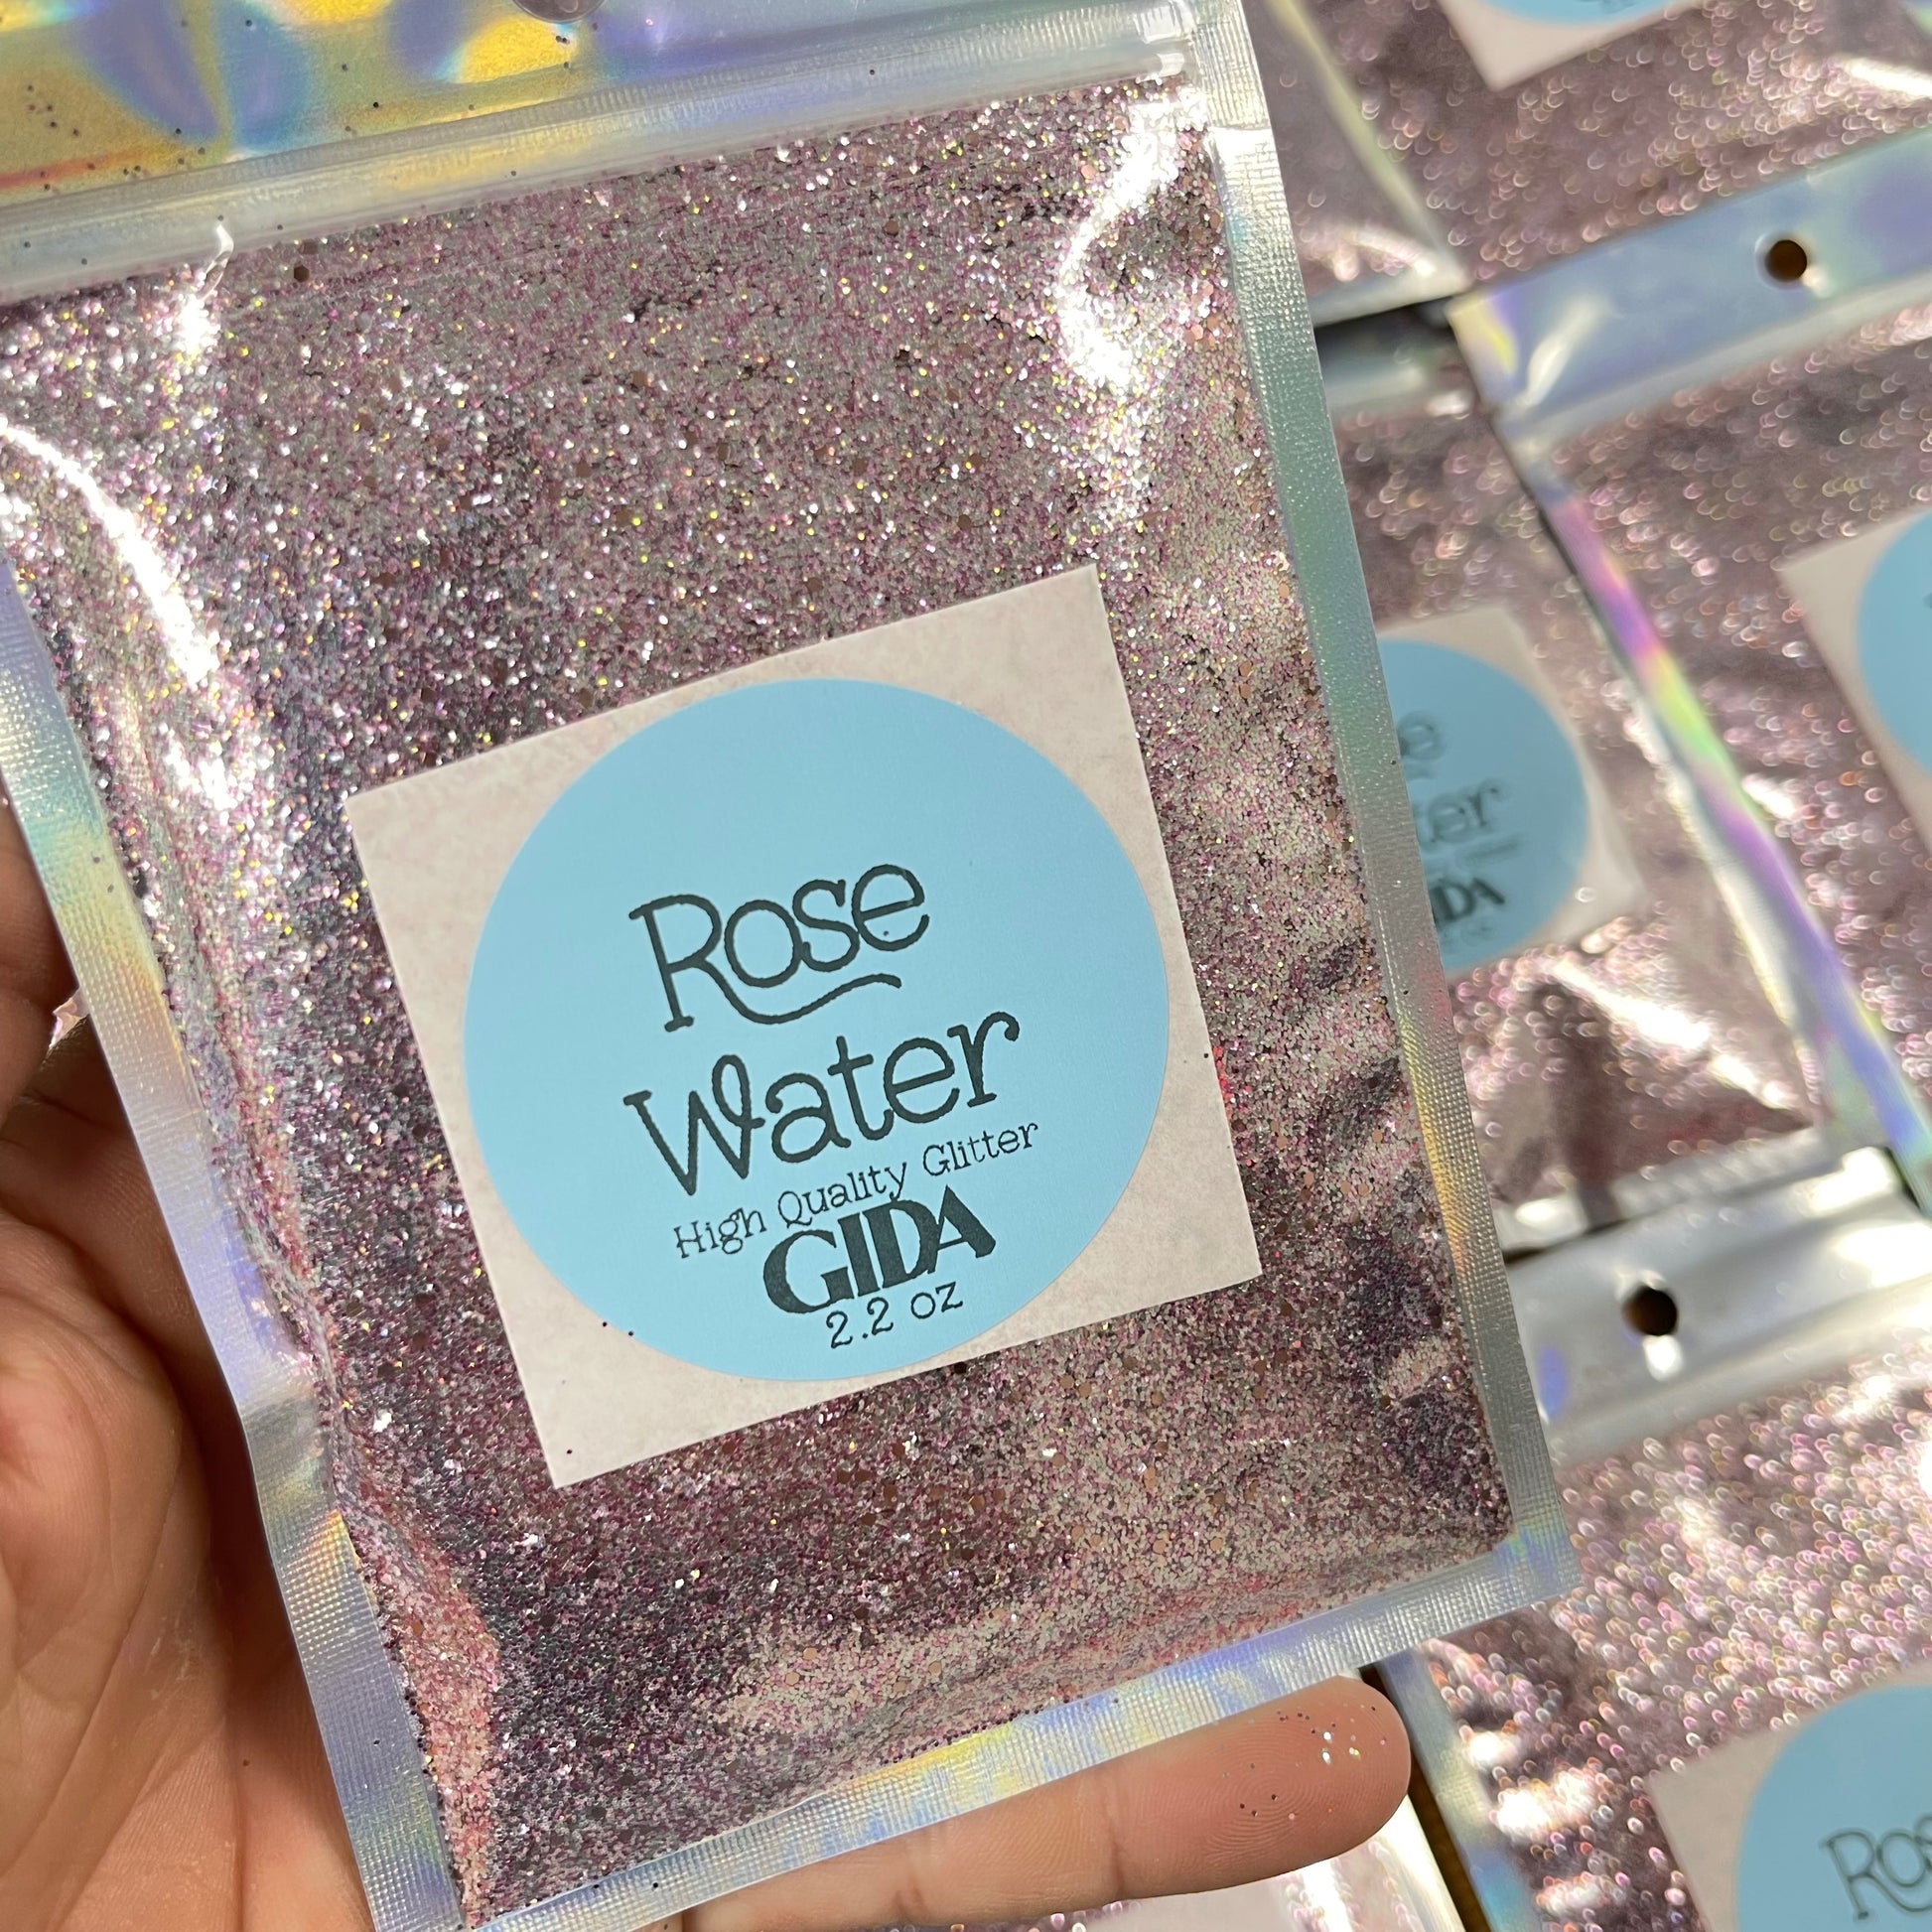 Rose Water Fine Glitter - 2.2 oz - GIDA DESIGN 